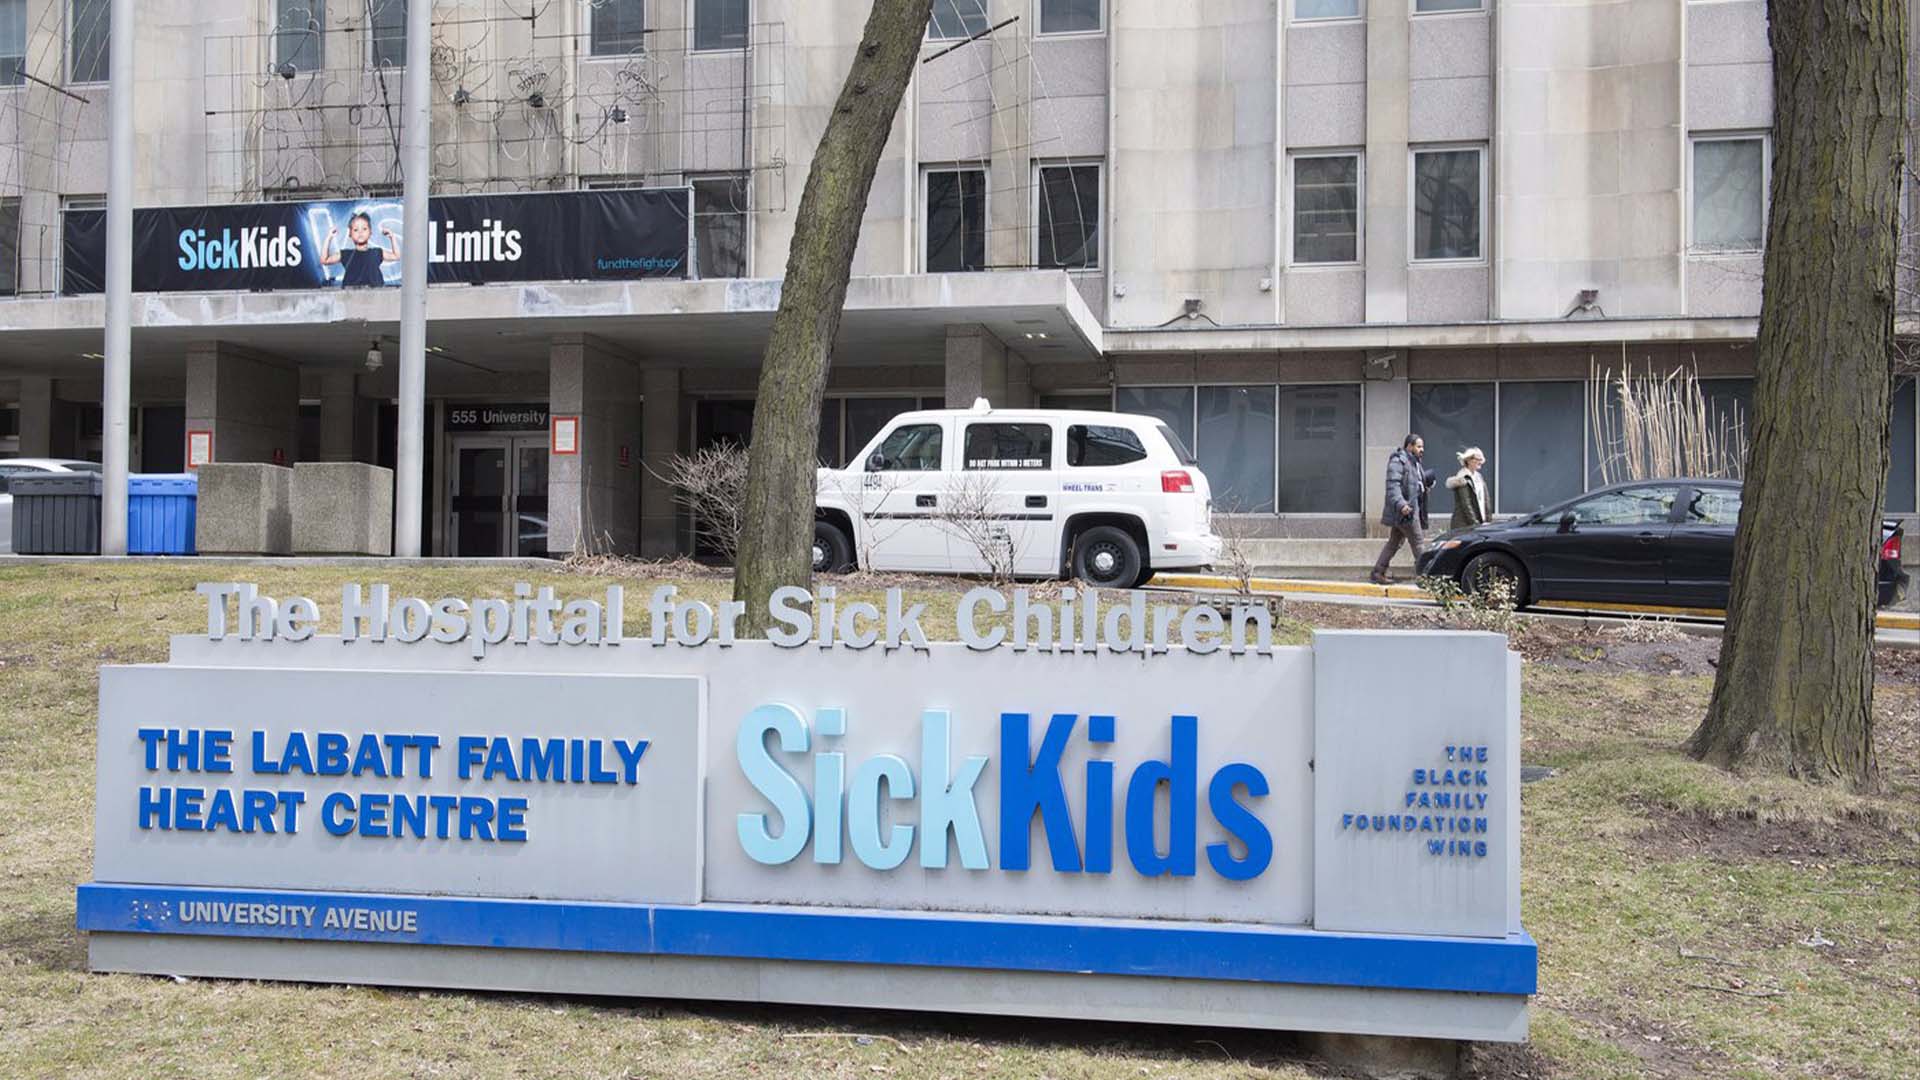 L'Hôpital pour enfants malades de Toronto affirme avoir identifié sept cas probables d'hépatite aiguë sévère d'origine inconnue. 